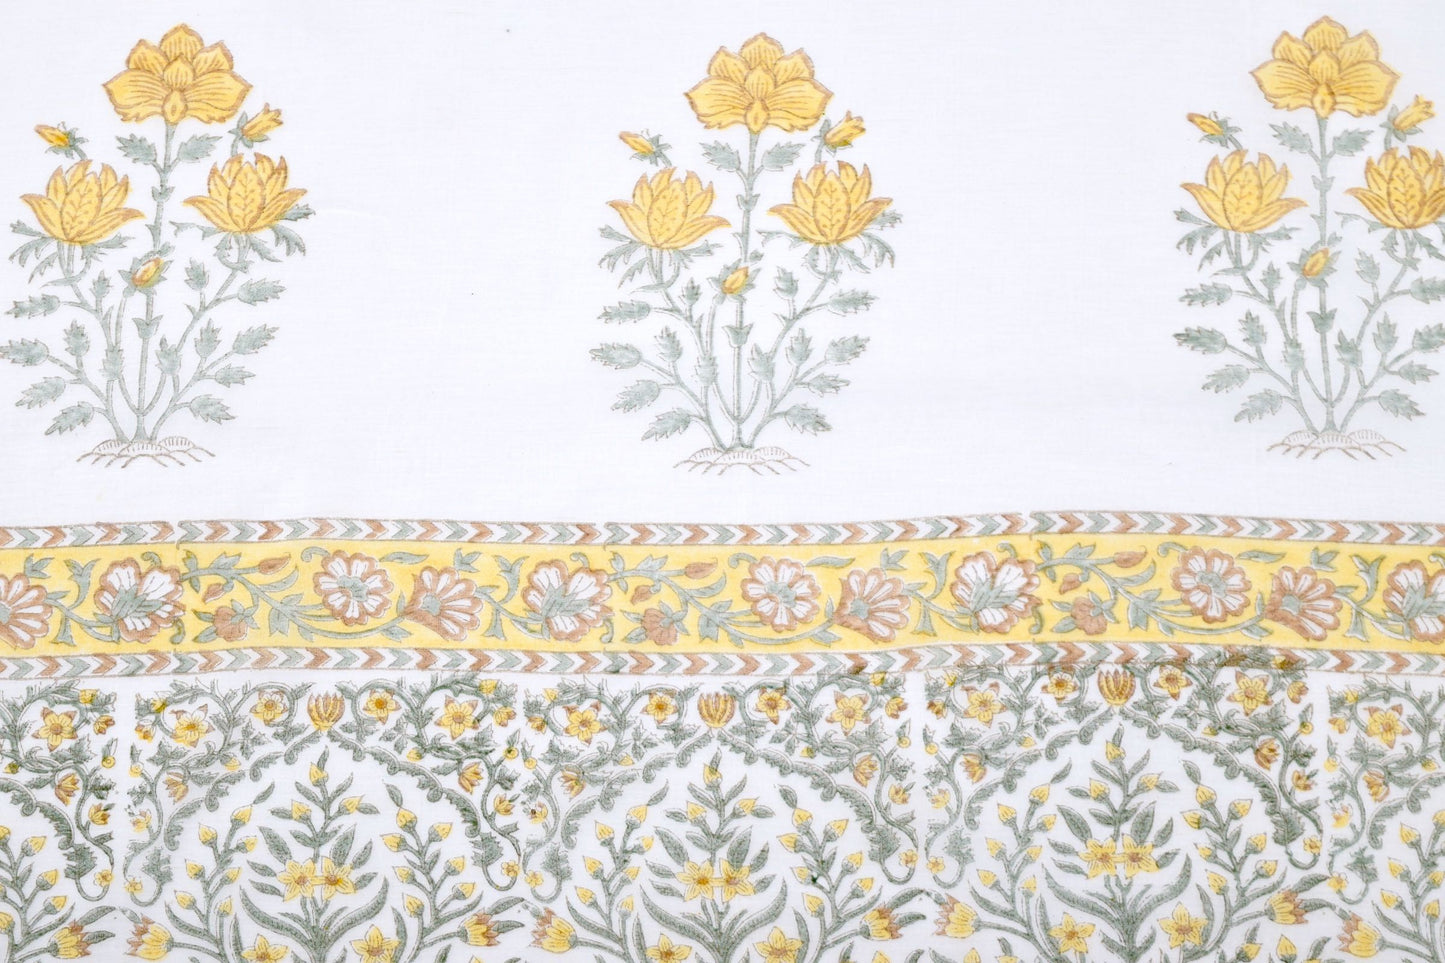 Bloc chemin de table en coton imprimé fleurs jaunes TR2 